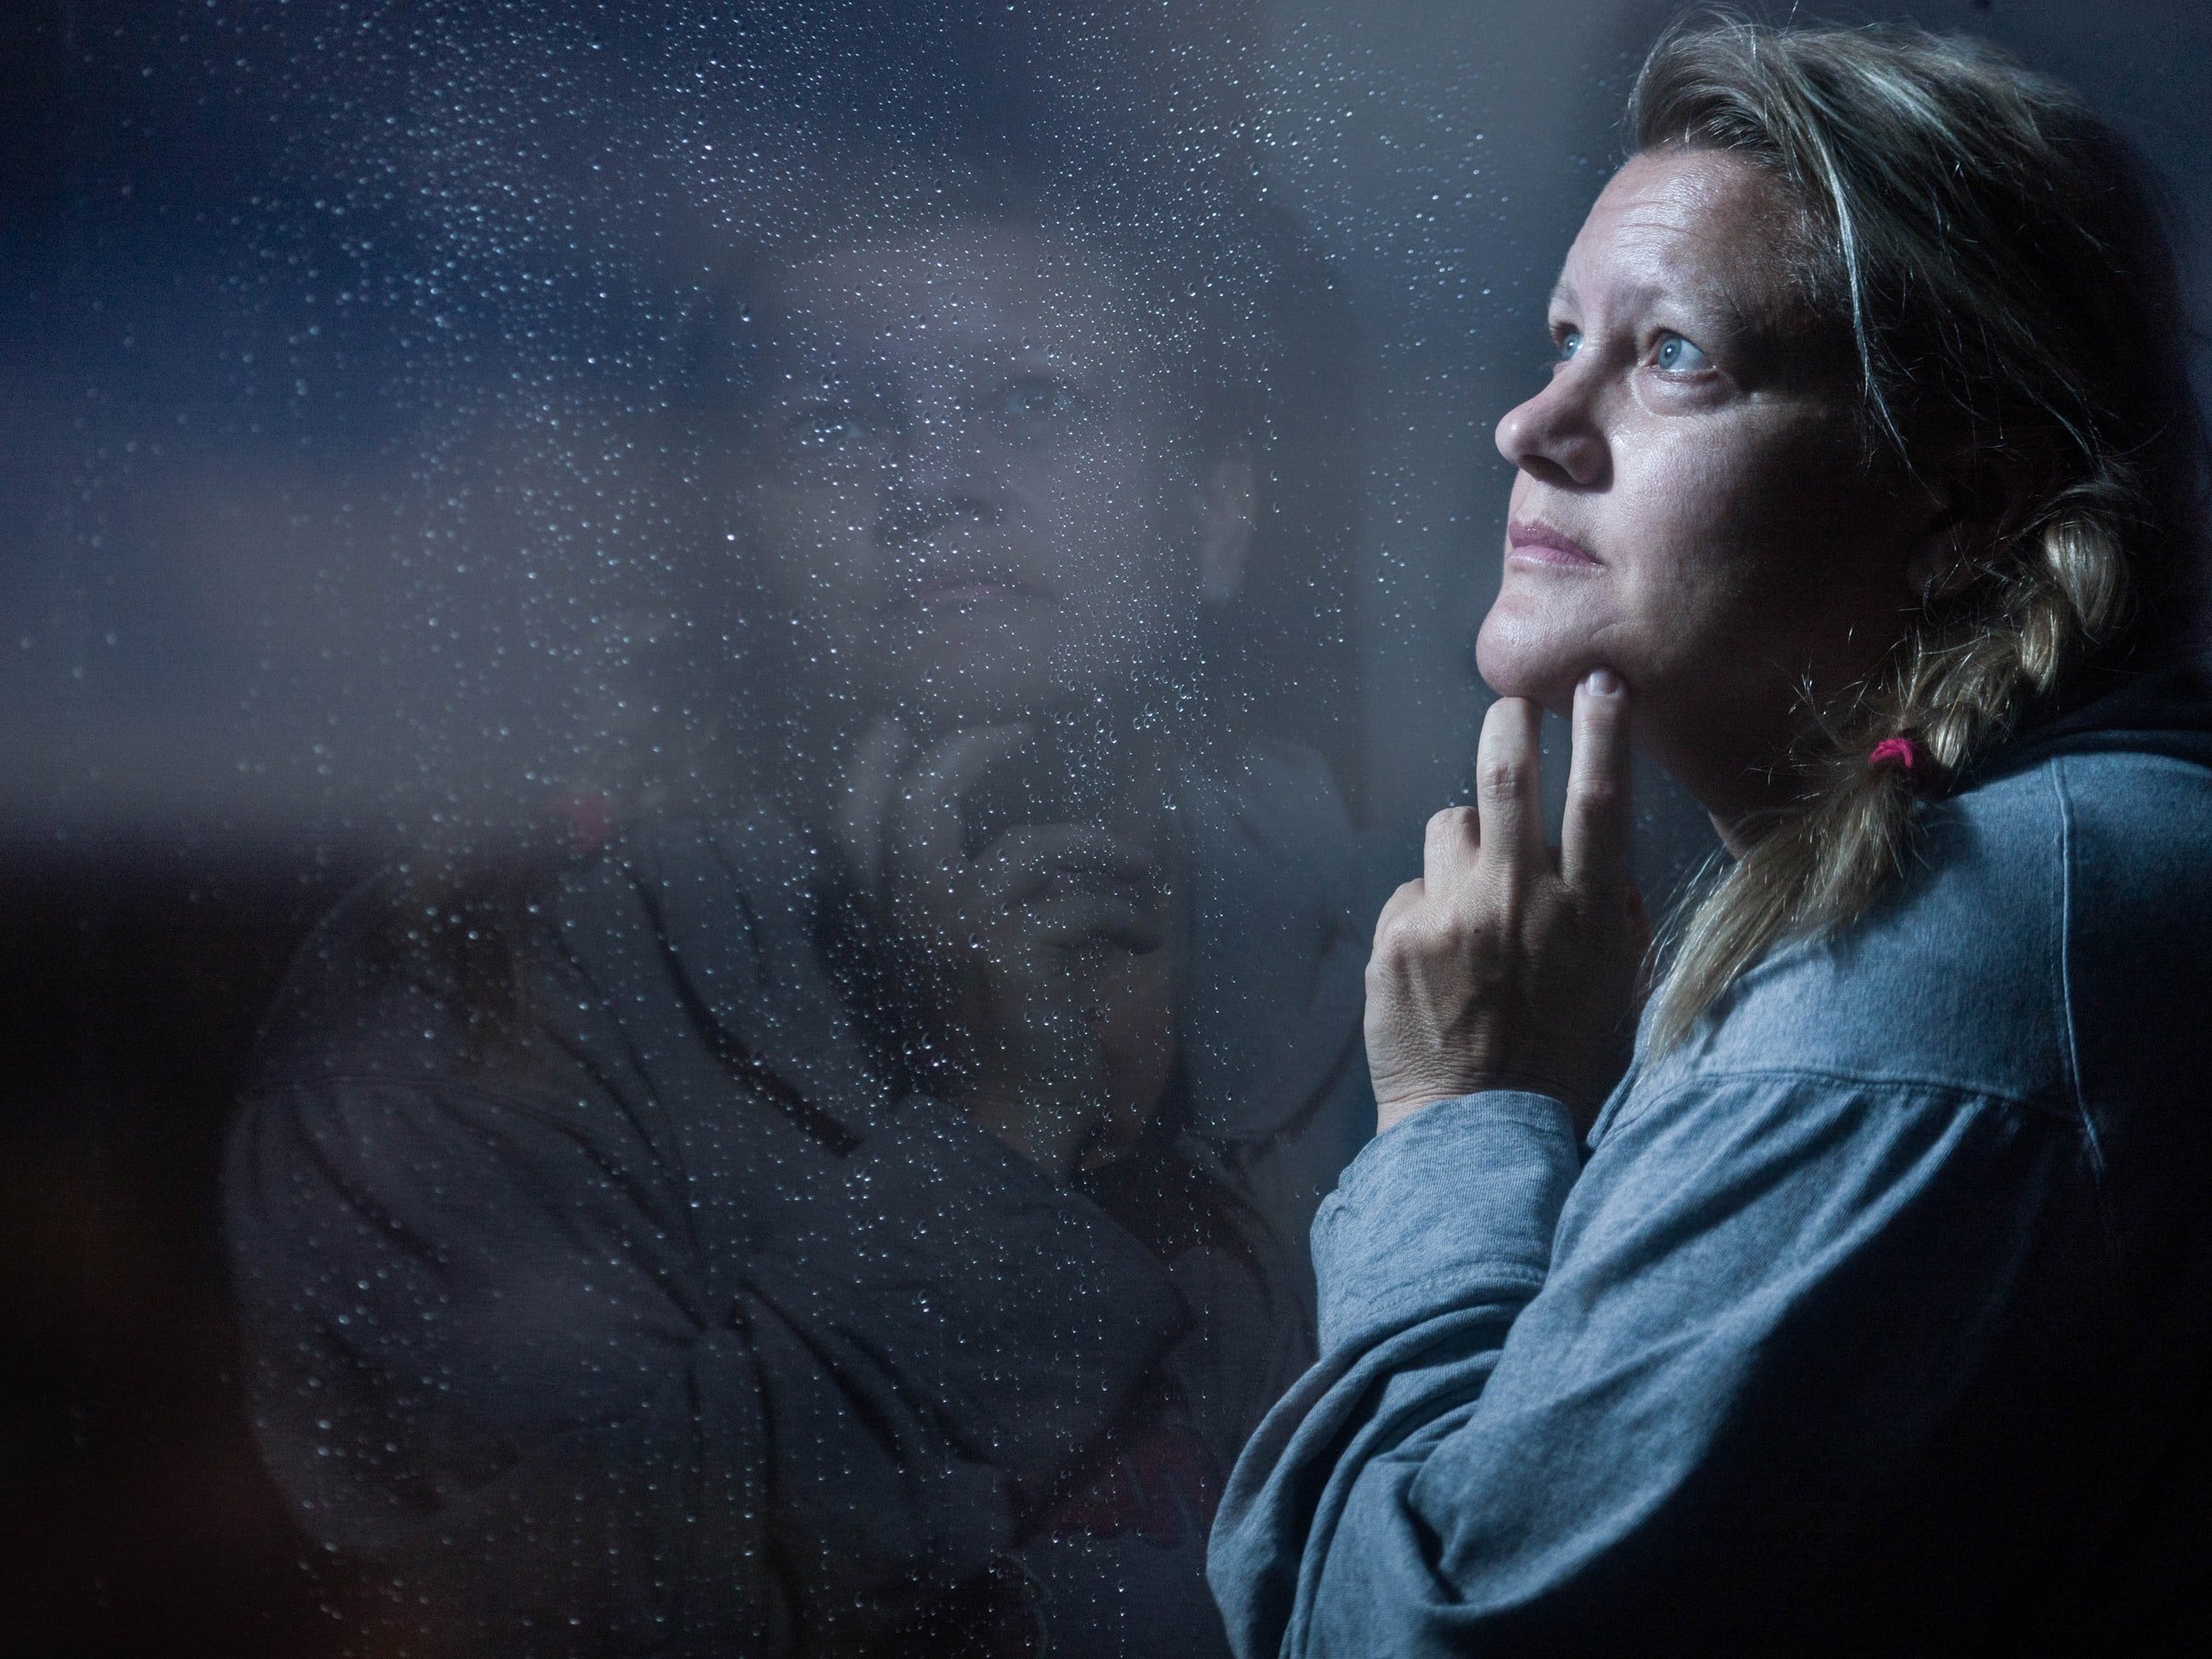 A woman looking outside a window. | Source: Unsplash